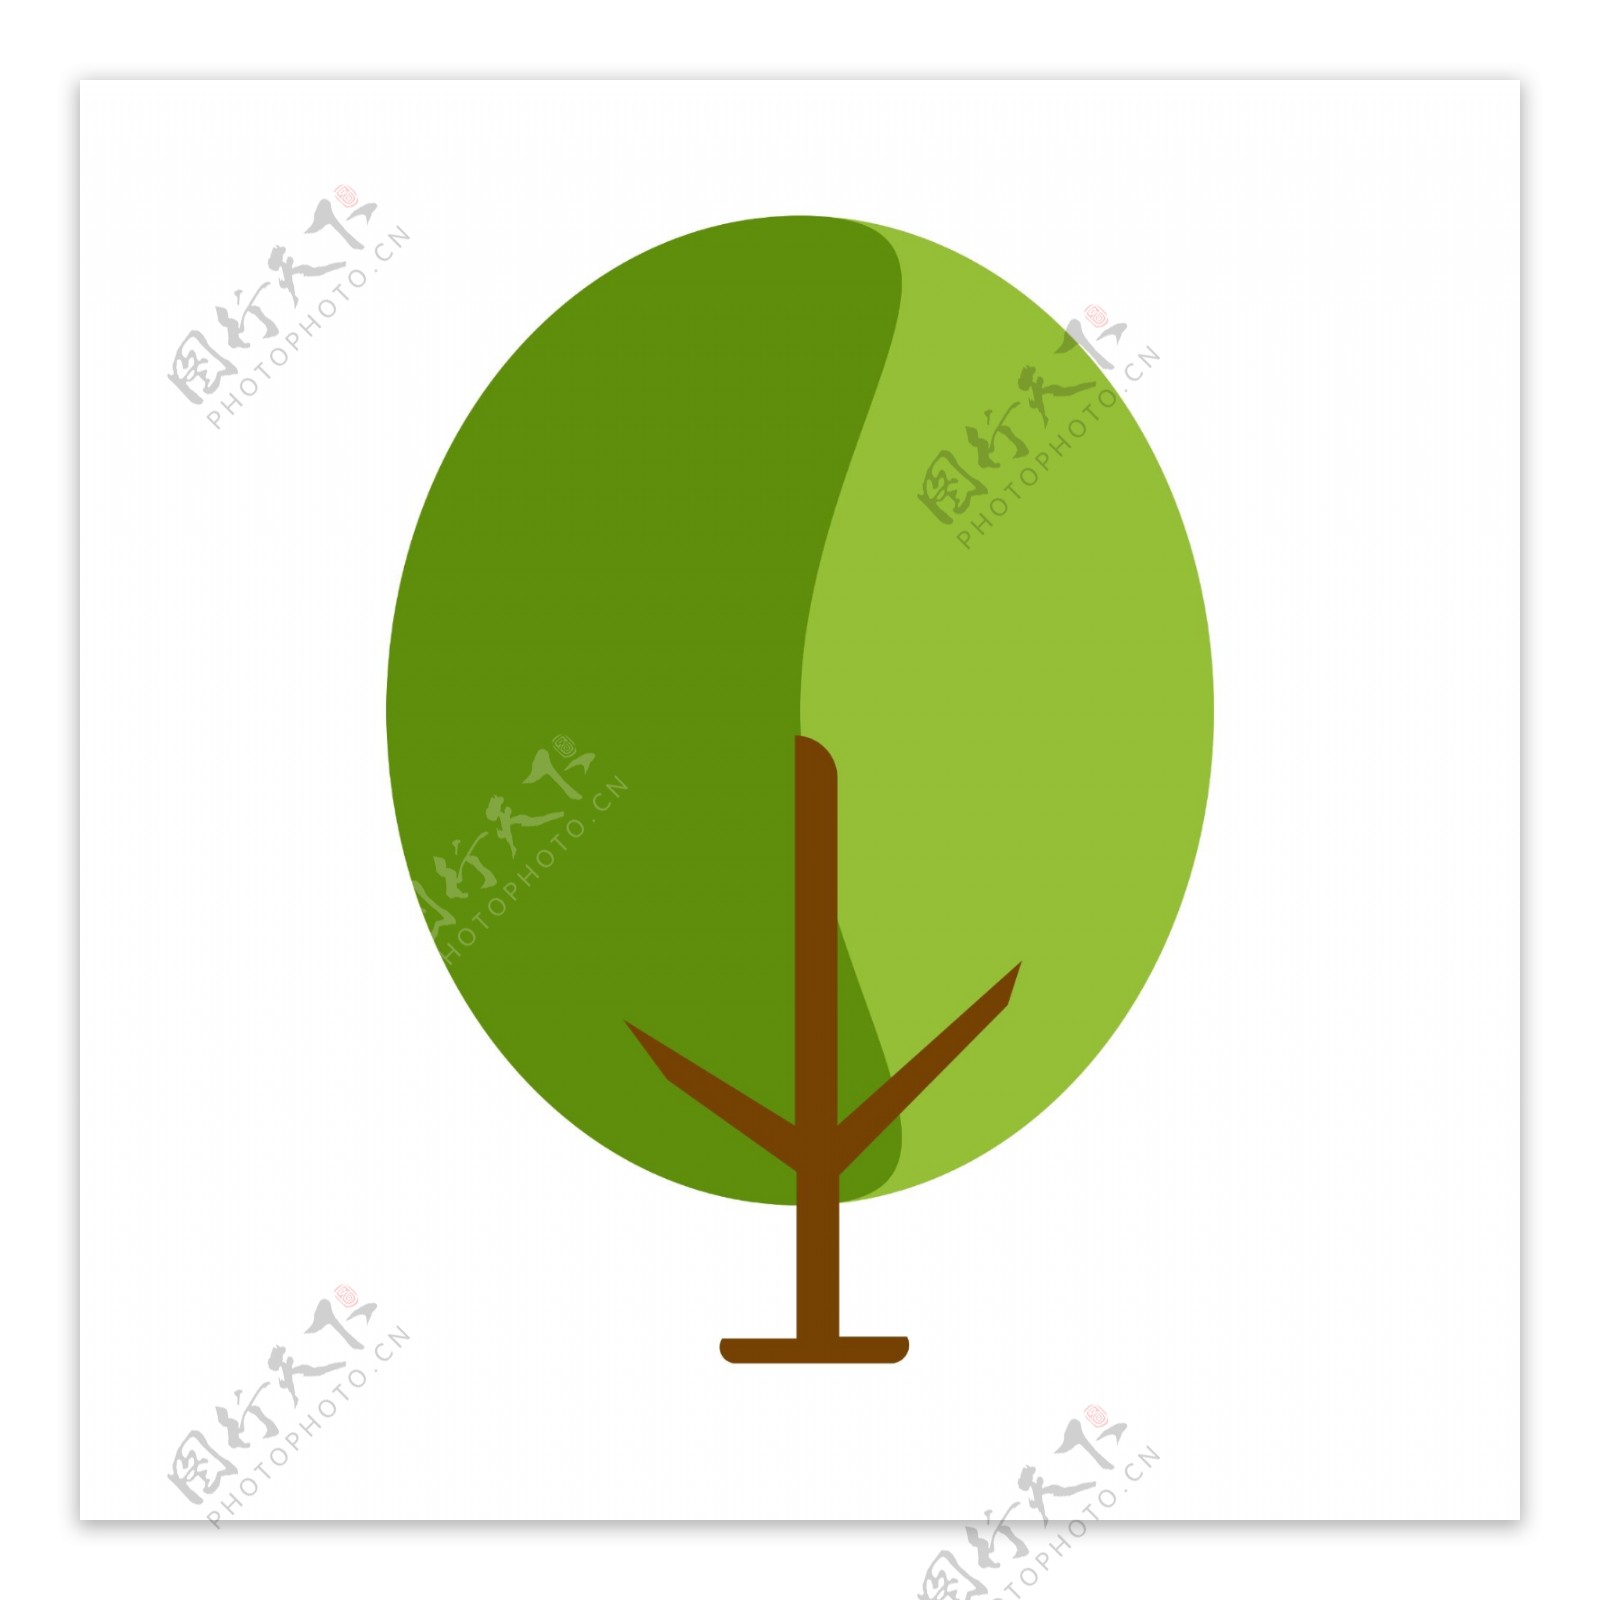 绿色卡通圆形大树